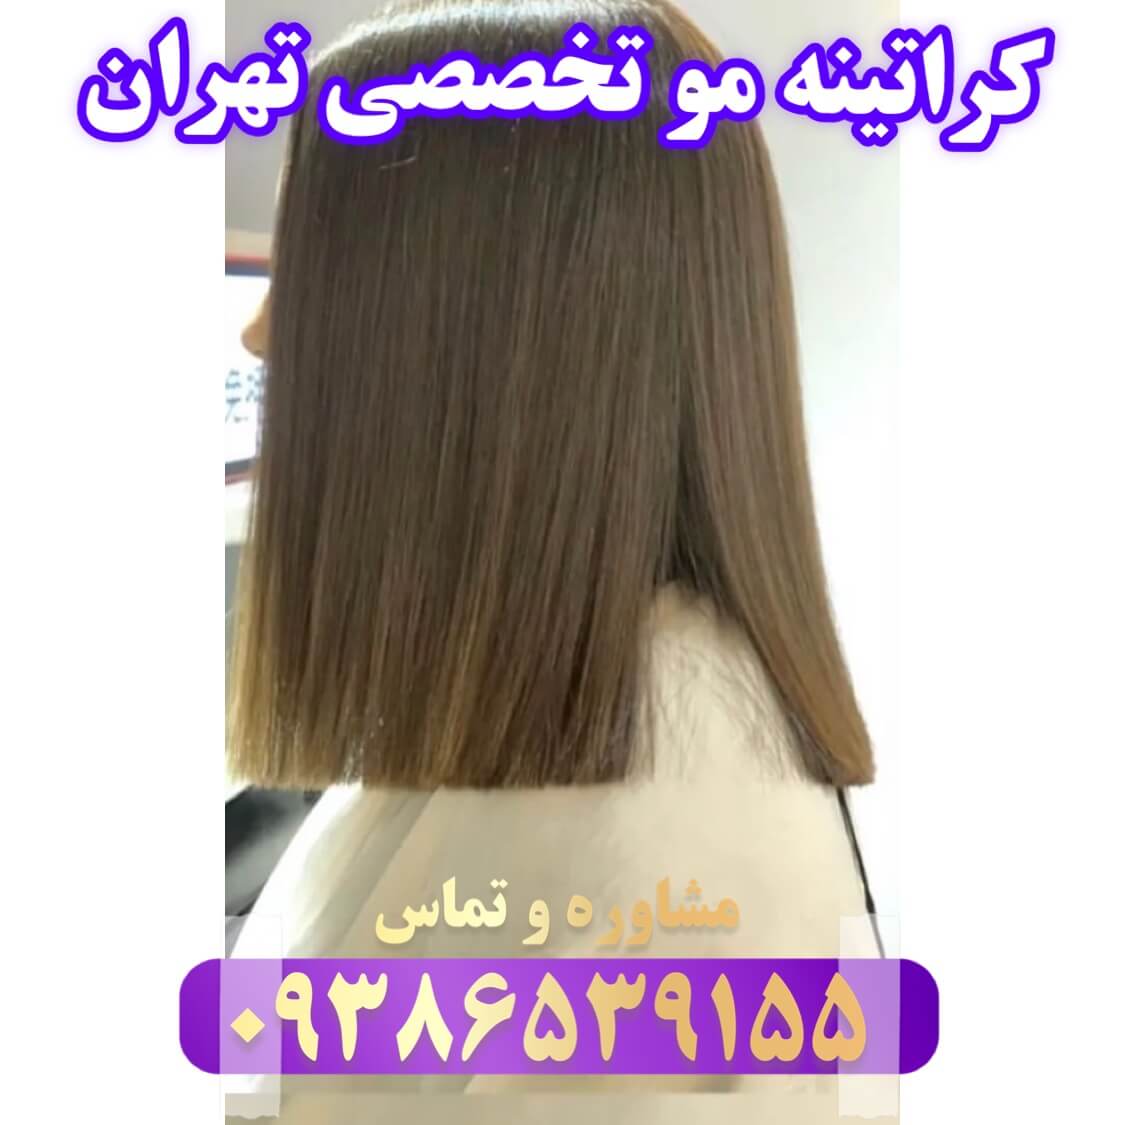 انجام بهترین مرکز تخصصی کراتینه مو تهران با بهترین مواد اولیه